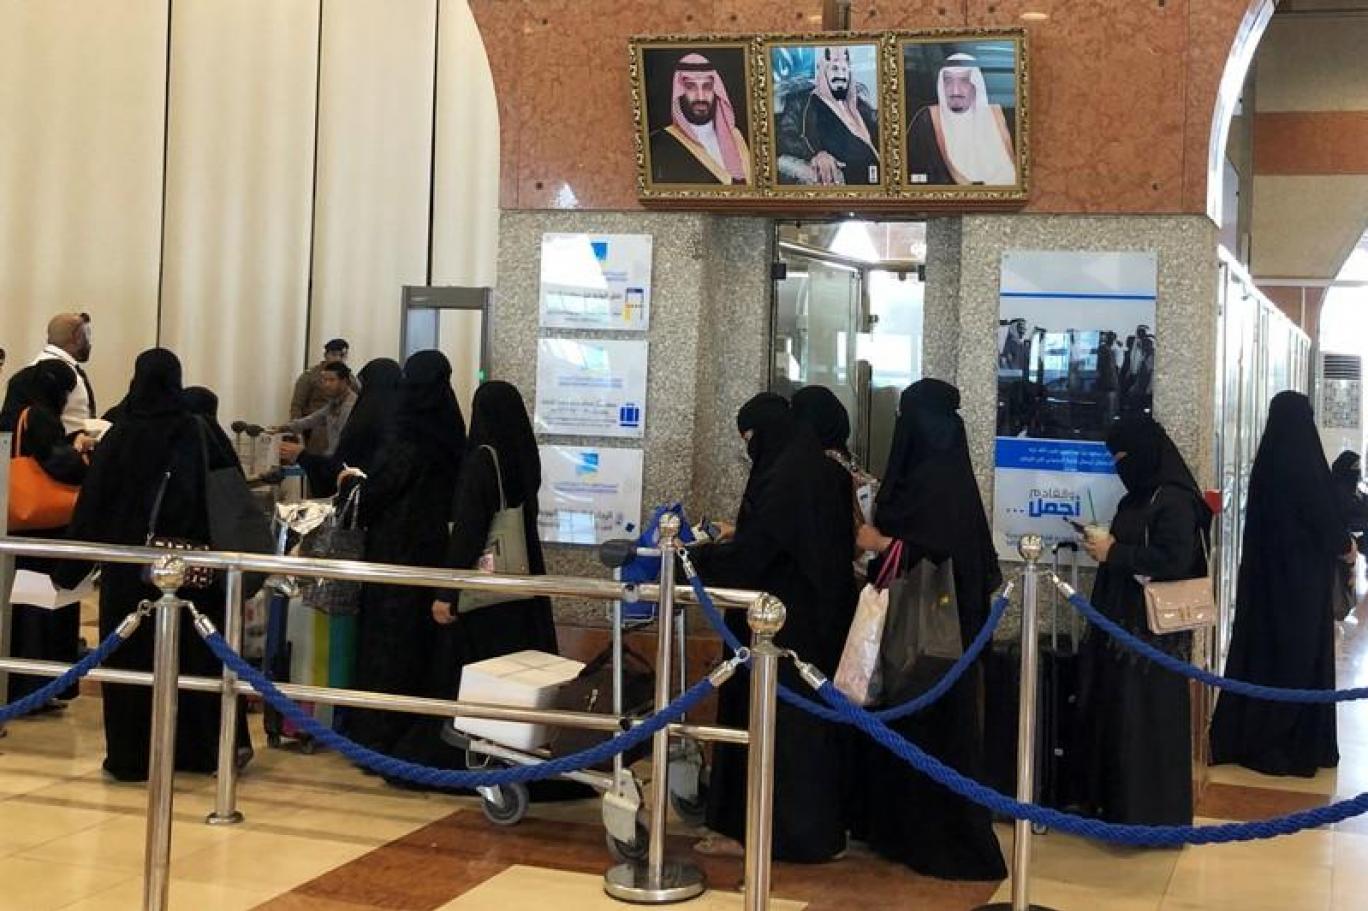 المرأة السعودية تواصل تحررها بقرار قضائي جديد لا يشترط وجود محرم بالمنزل